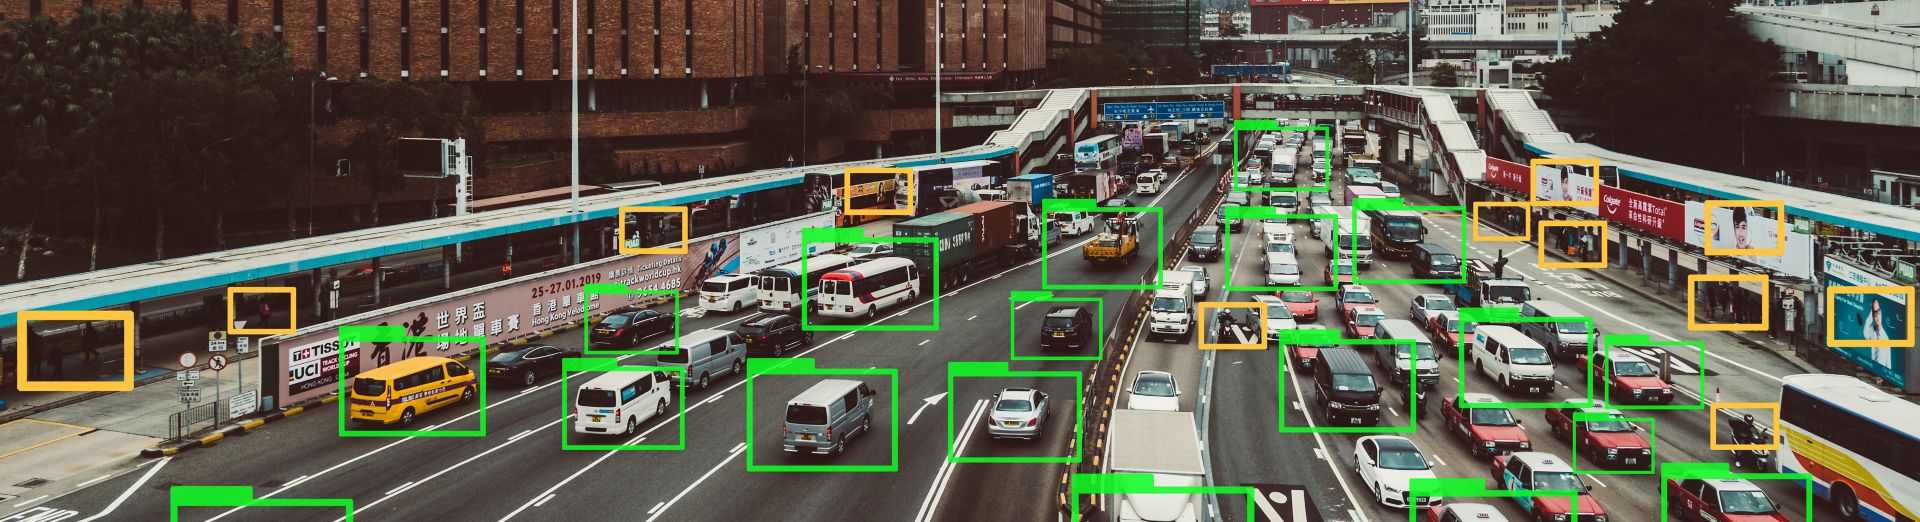 Tecnologia di machine learning per tracciare veicoli in autostrada